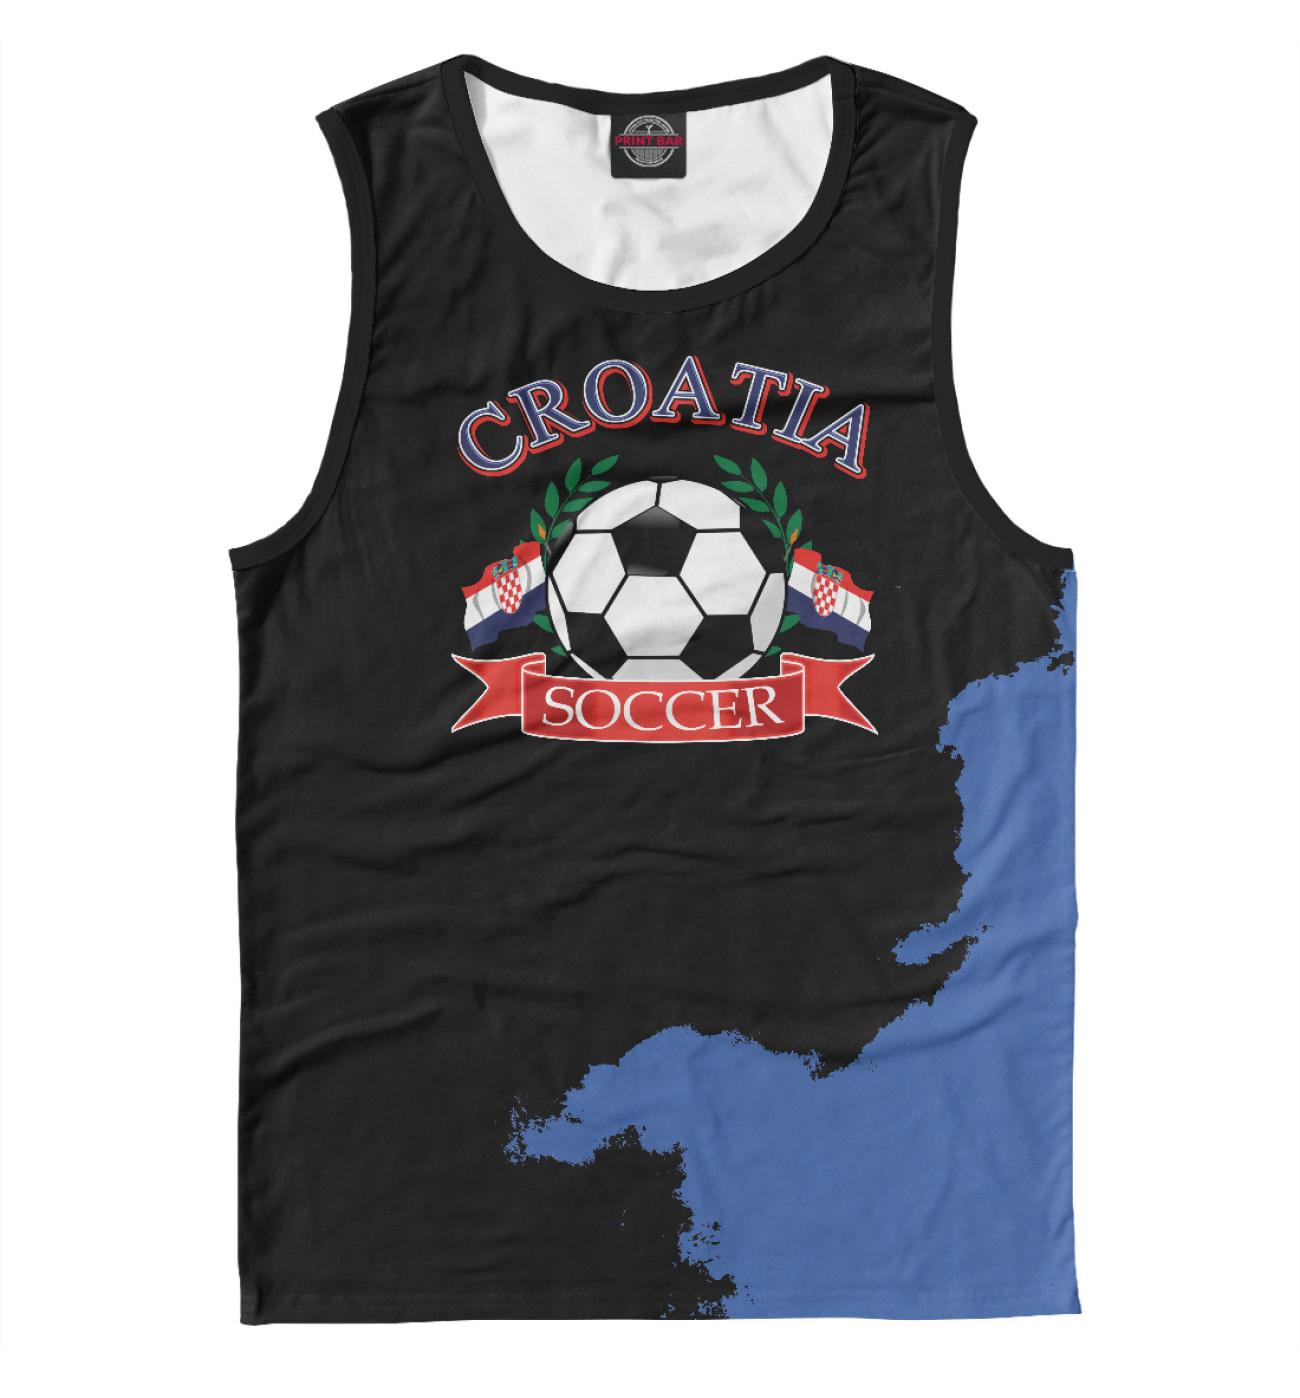 Мужская Майка Croatia soccer ball, артикул: FTO-670002-may-2